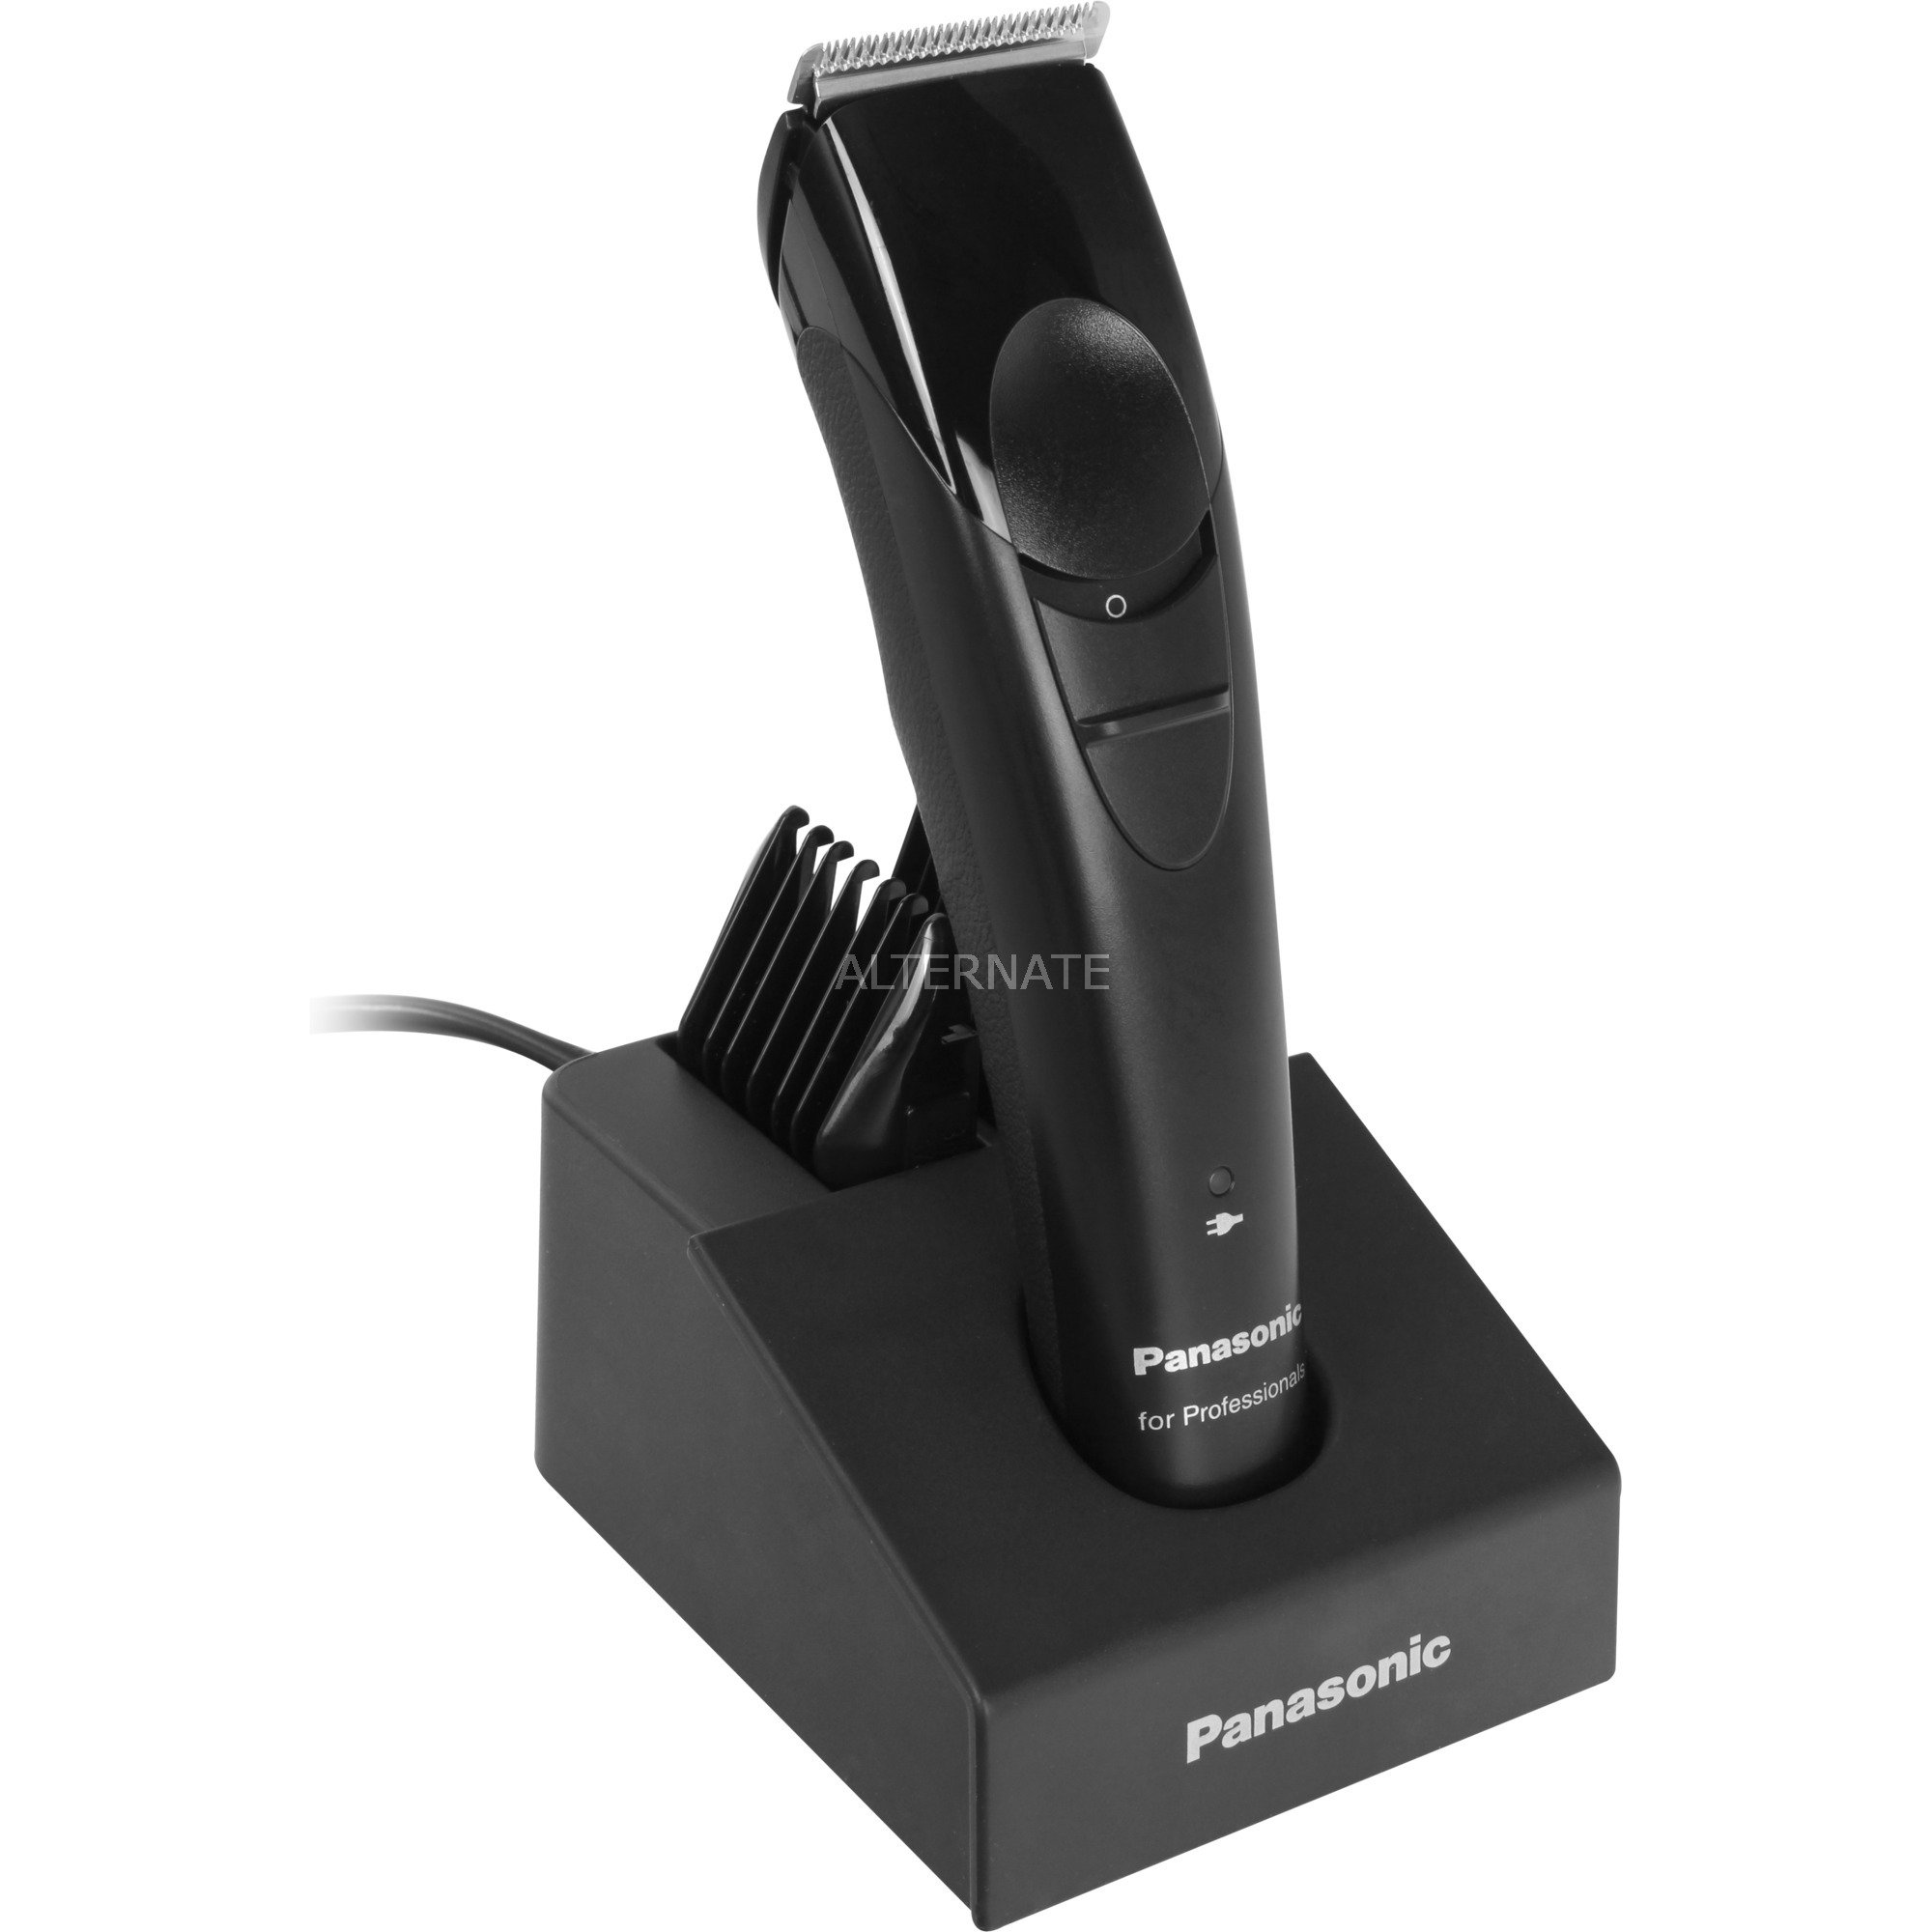 Image of Alternate - ER-GP22-K801, Haarschneider online einkaufen bei Alternate